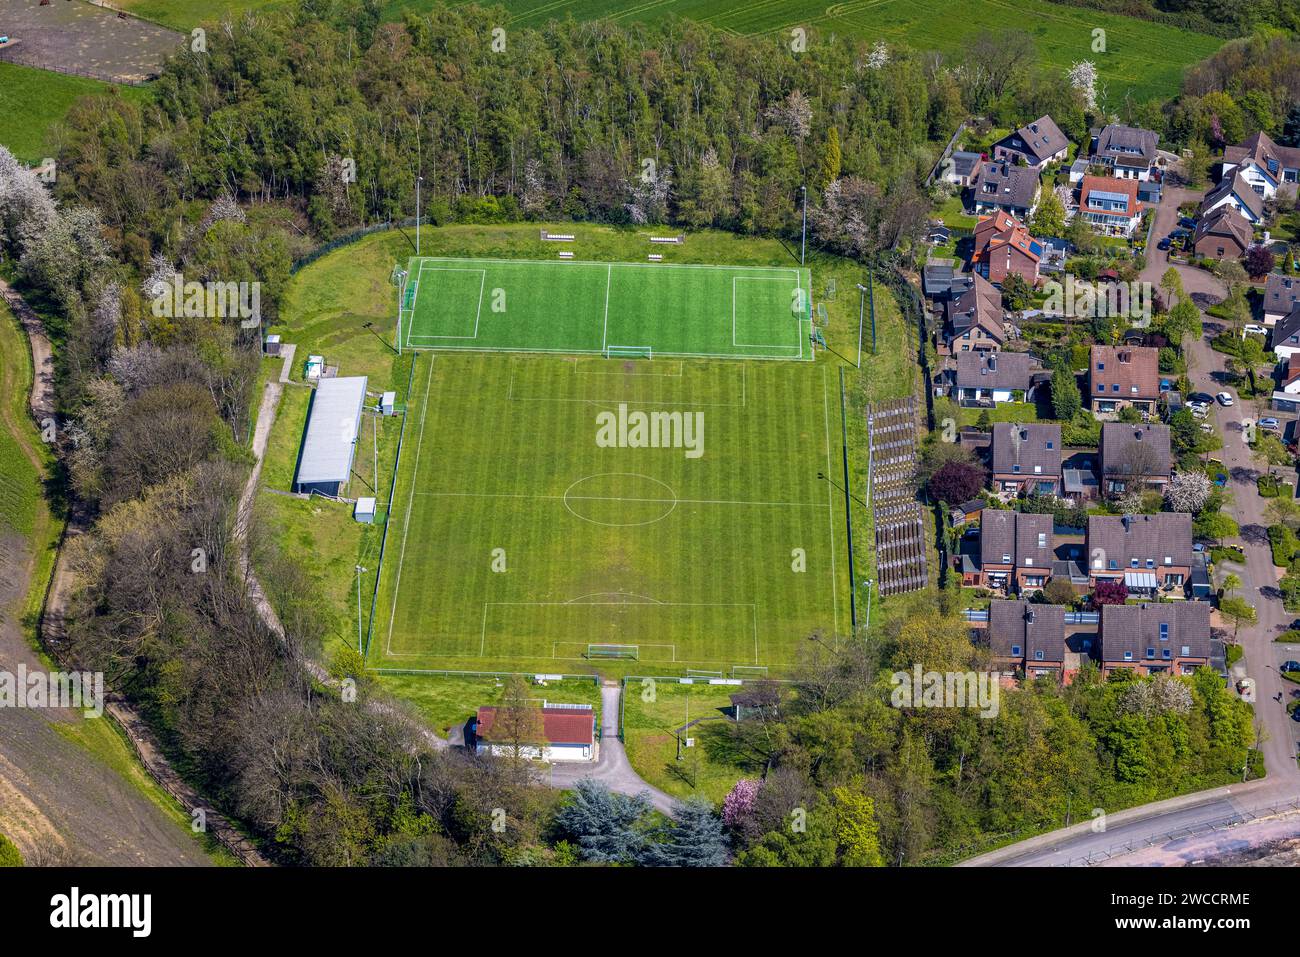 Aerial view, Glück Auf Stadion sports ground, SV Sodingen, Börnig, Herne, Ruhr area, North Rhine-Westphalia, Germany Stock Photo